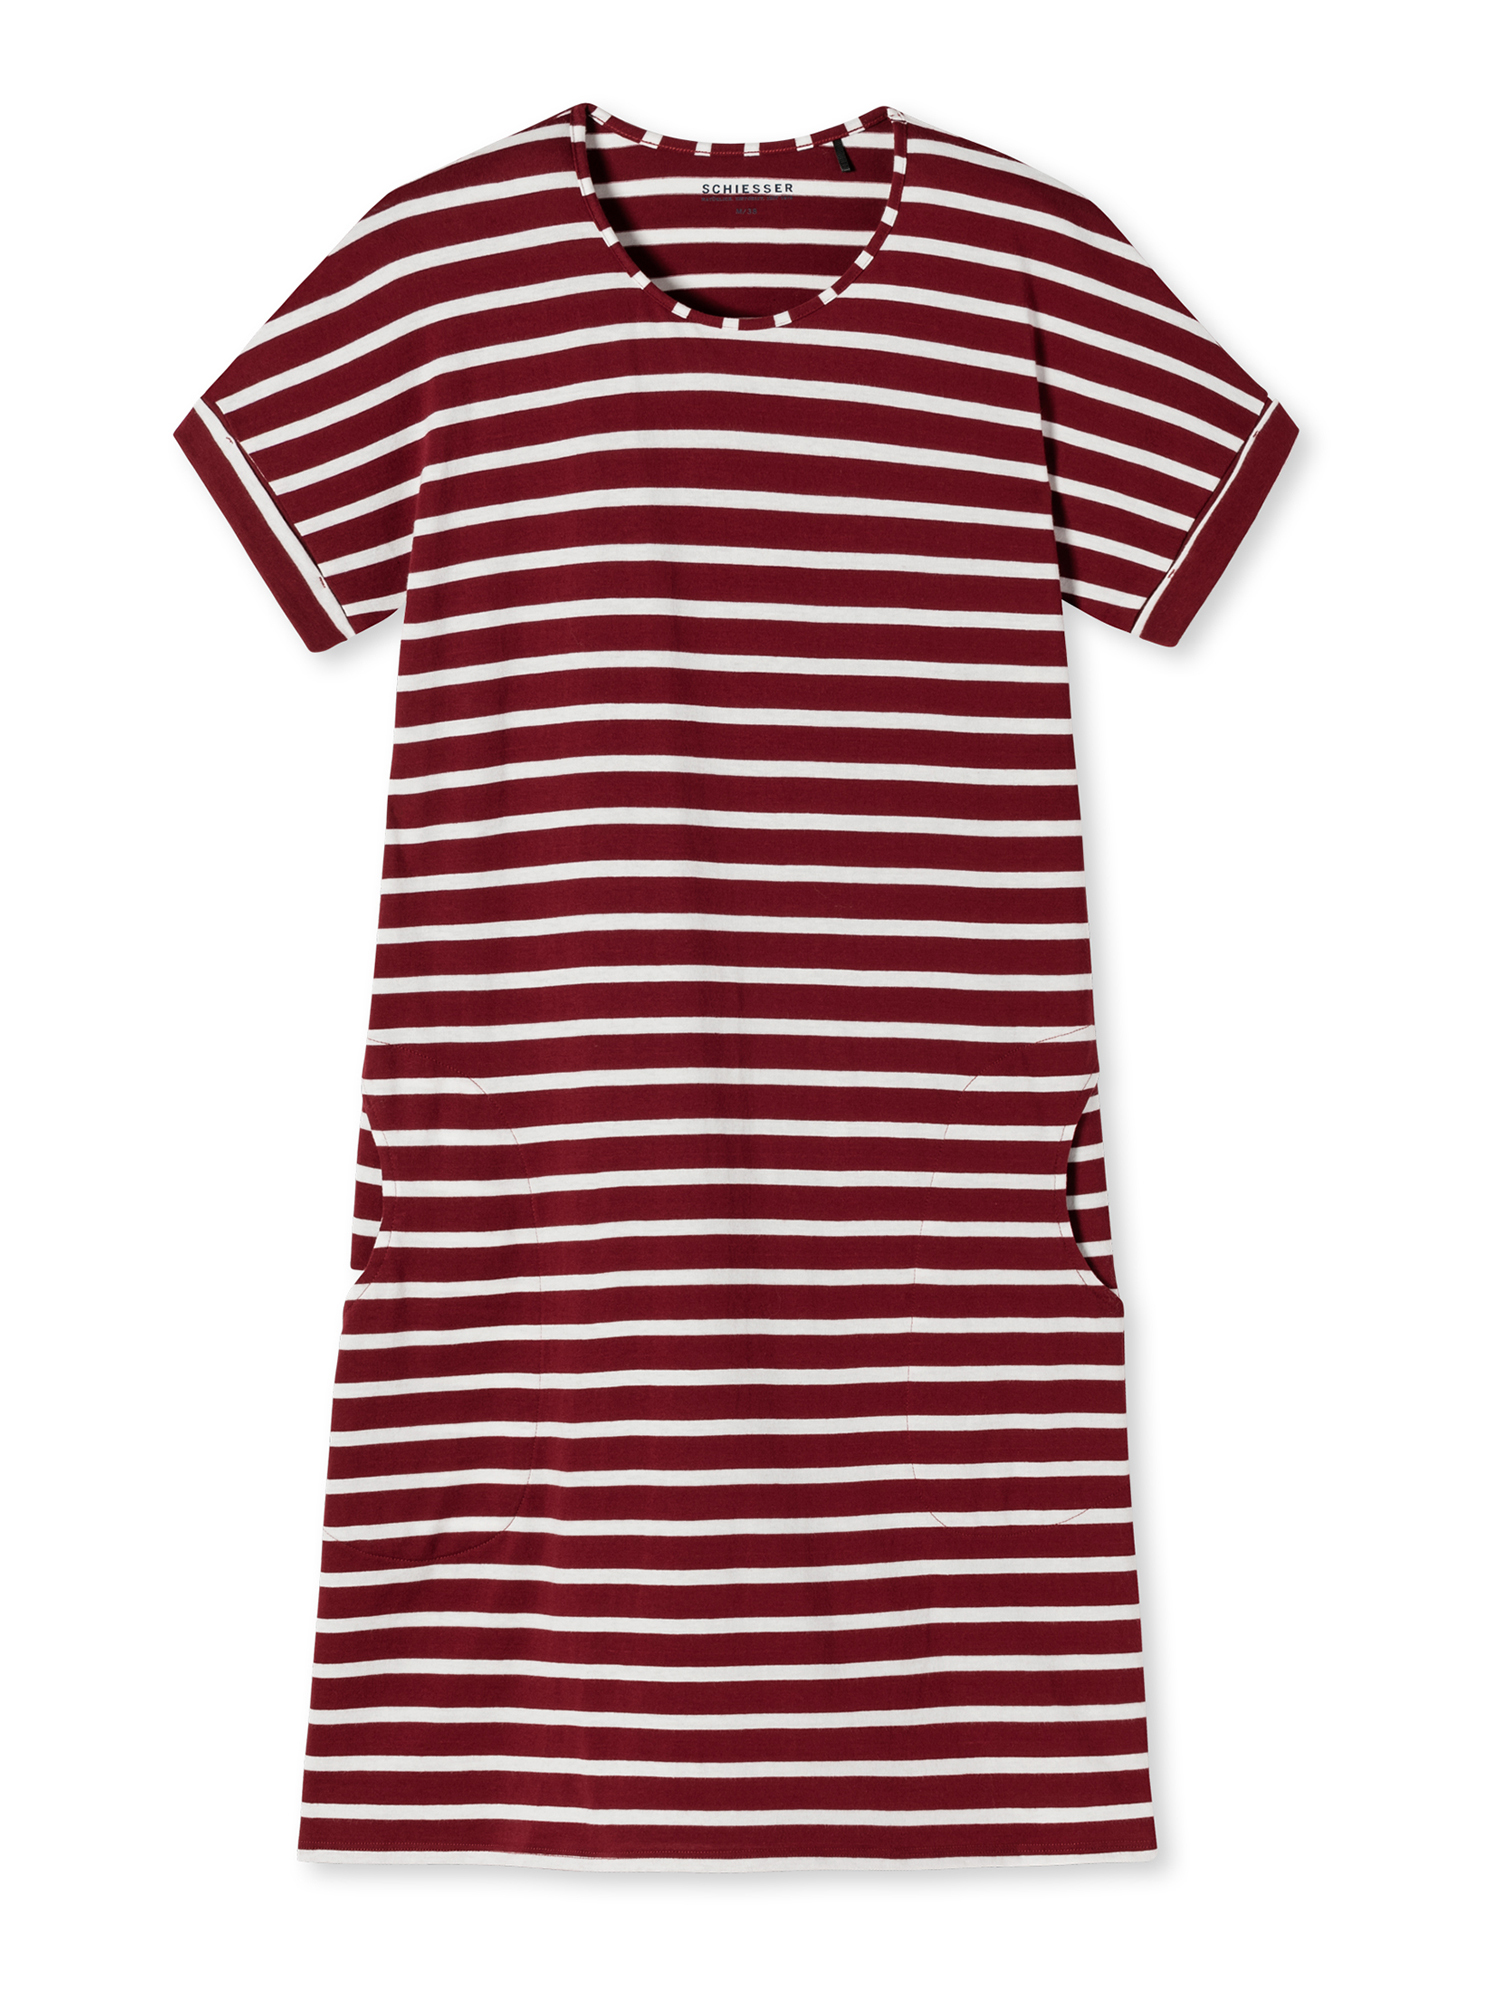 Ночная рубашка Schiesser Essential Stripes, бордо цена и фото